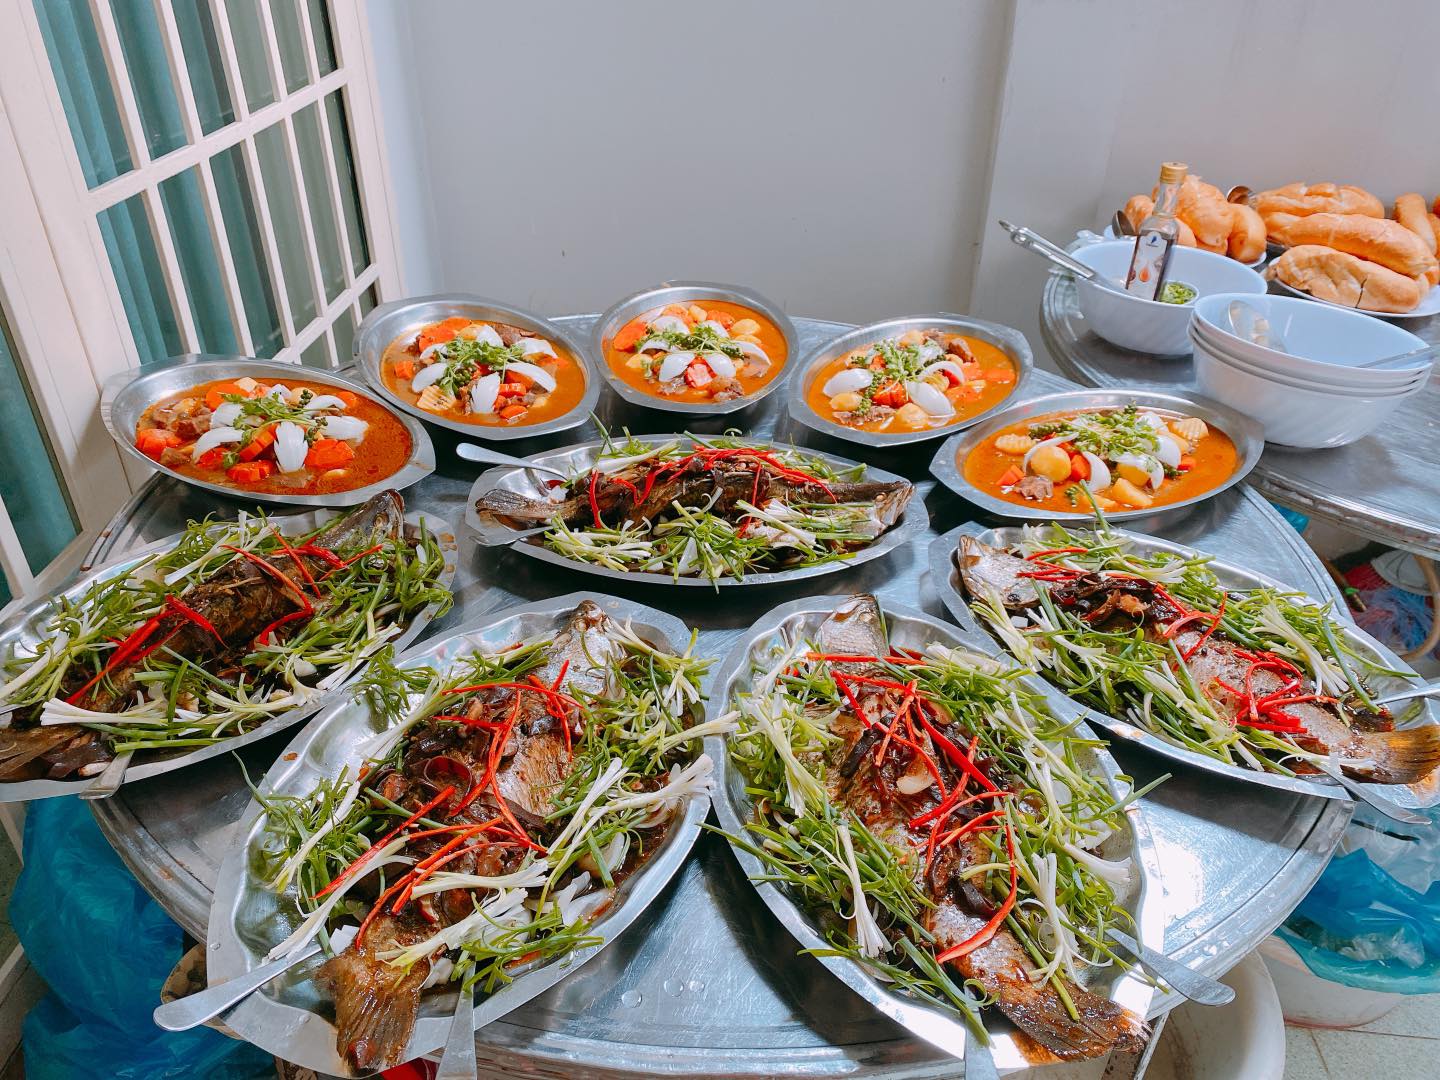 Nấu tiệc tại nhà Ánh Hồng - Dịch vụ nấu tiệc tại nhà quận Phú Nhuận